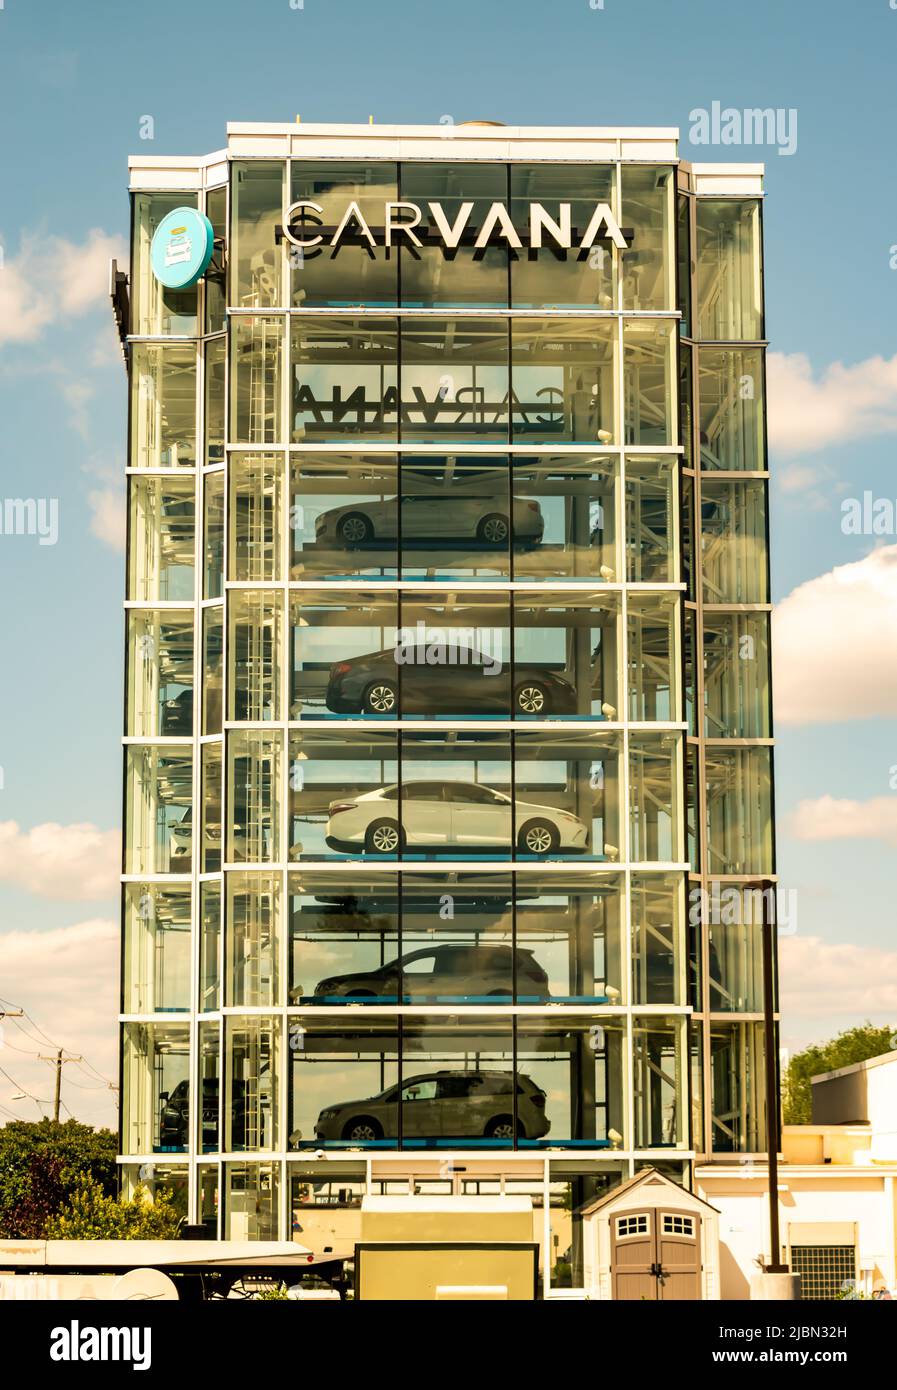 Carvanas Automat mit Glasturm, gefüllt mit Fahrzeugen, die darauf warten, von Käufern mit Marke am oberen Rand und teilweise bewölktem Himmel abgeholt zu werden. Stockfoto